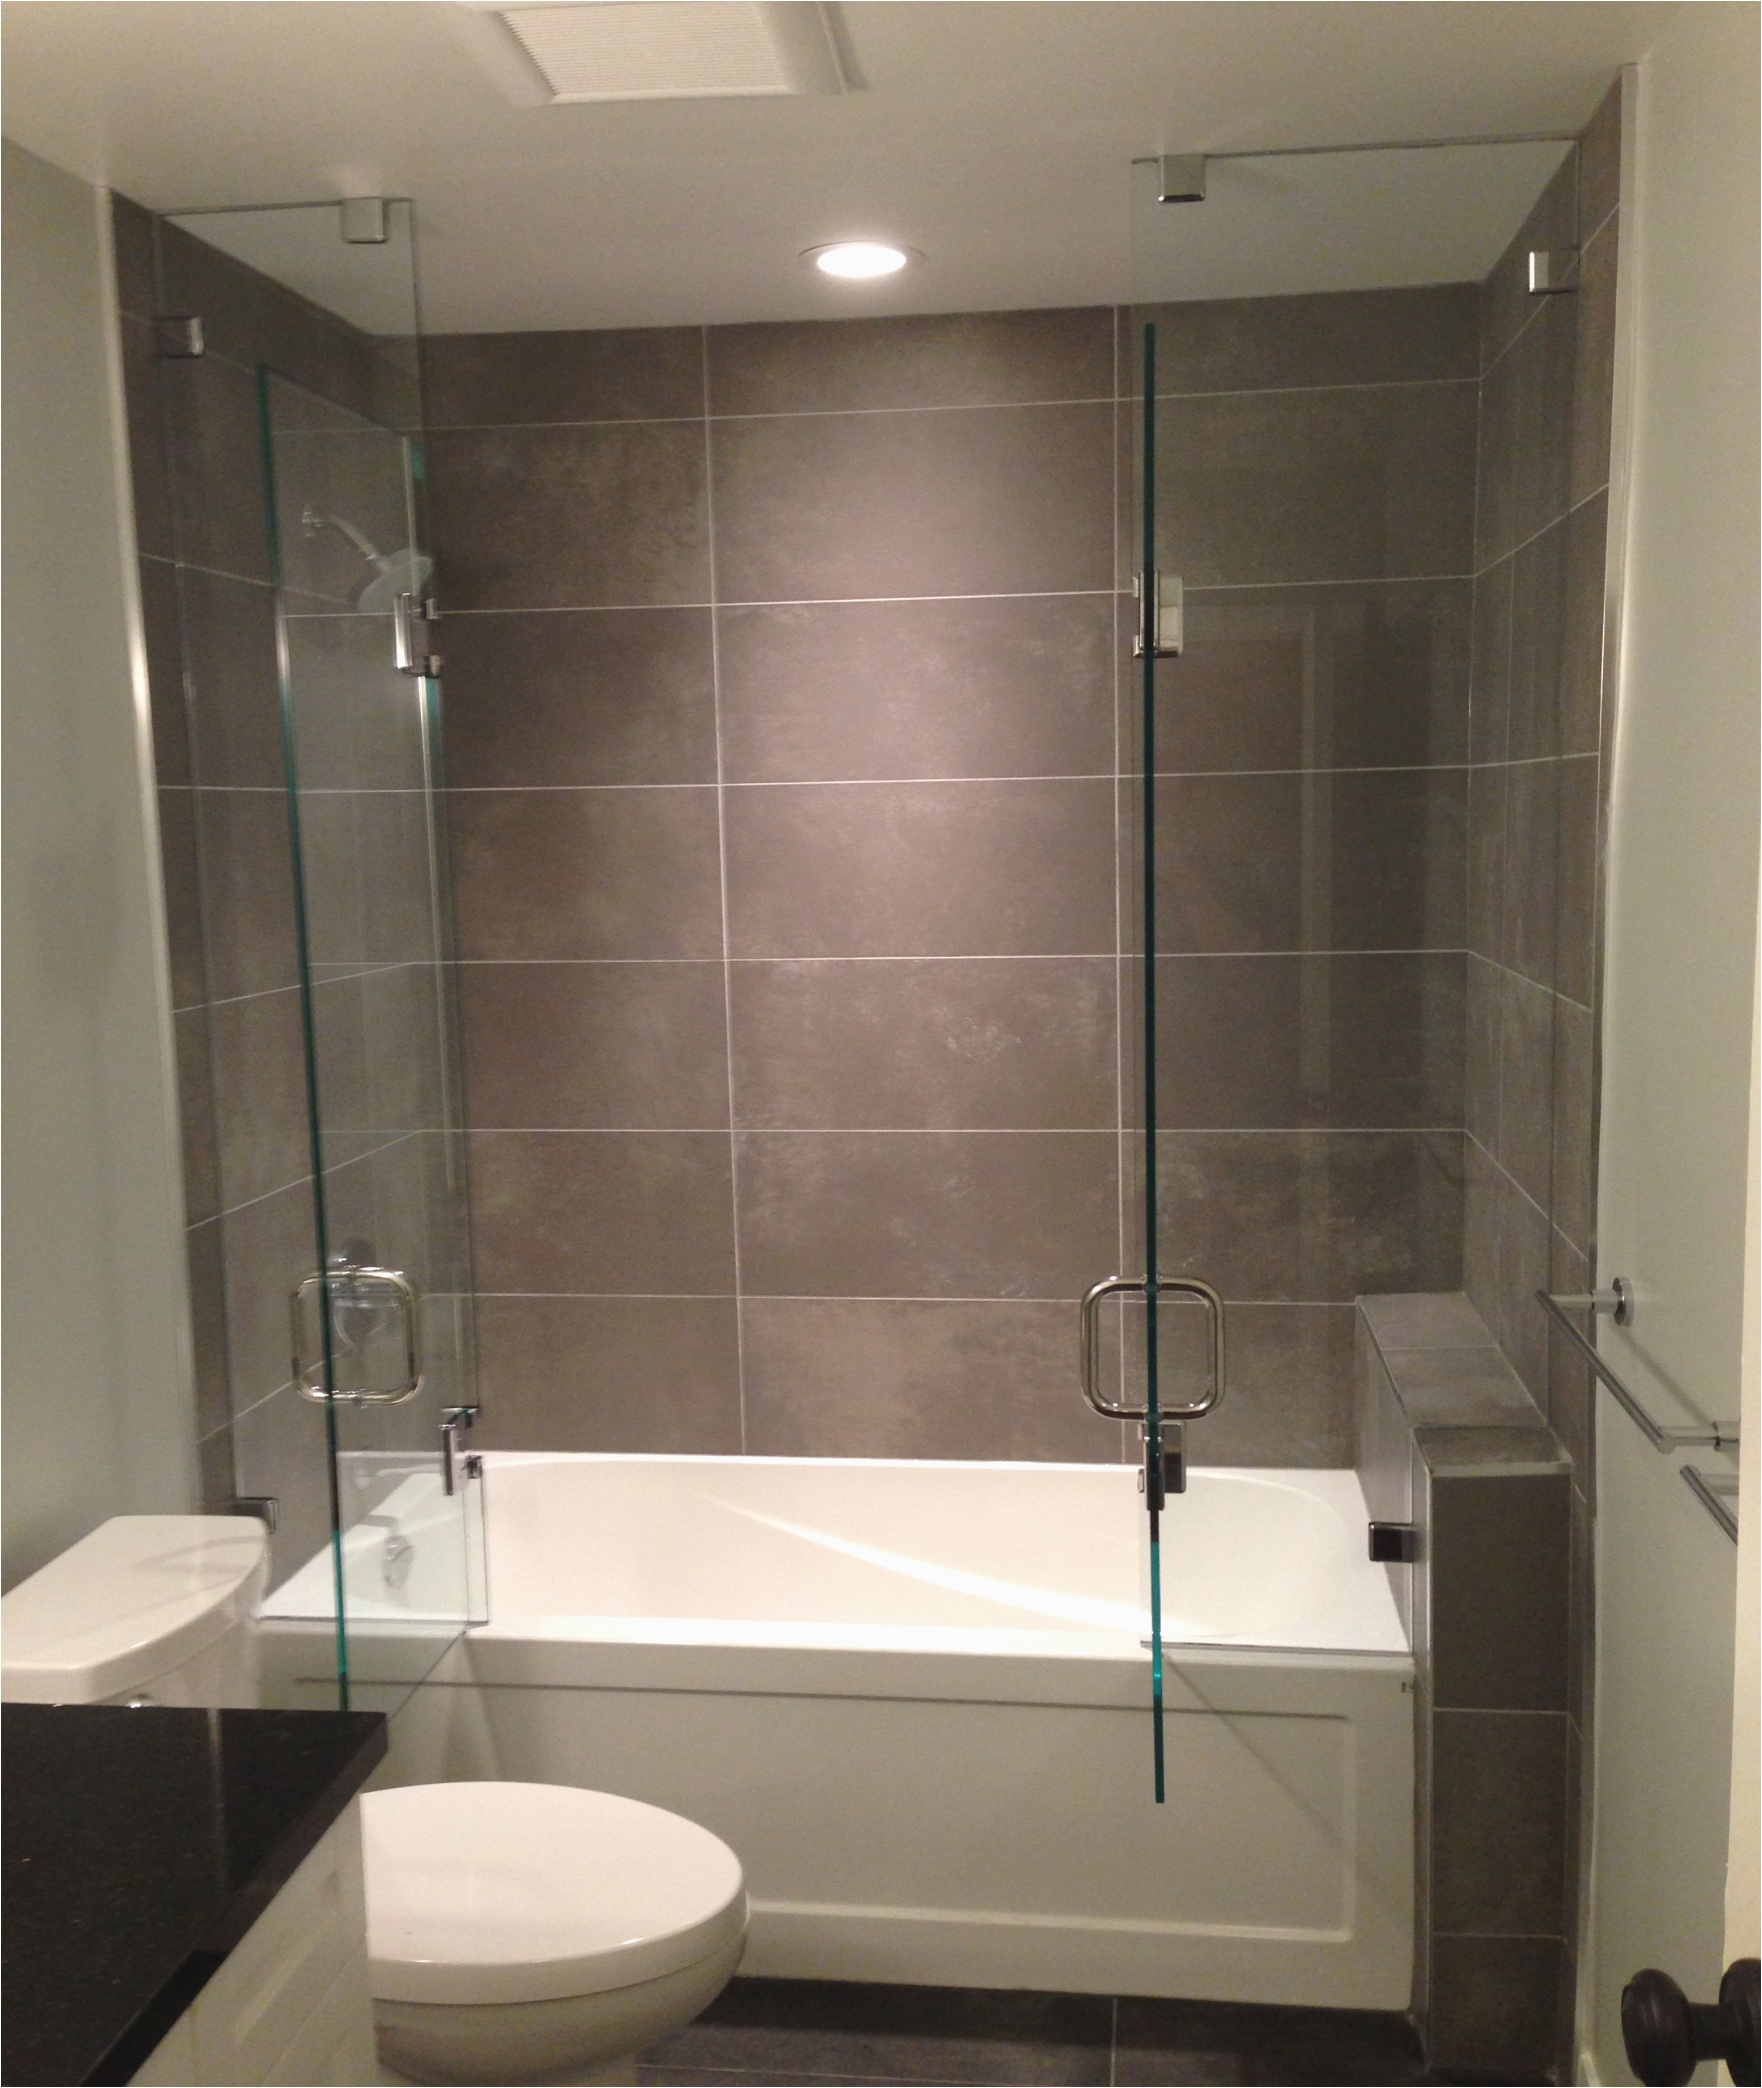 lowes frameless shower doors bathroom frameless pivot shower door lowes splendid shower lowes frameless shower